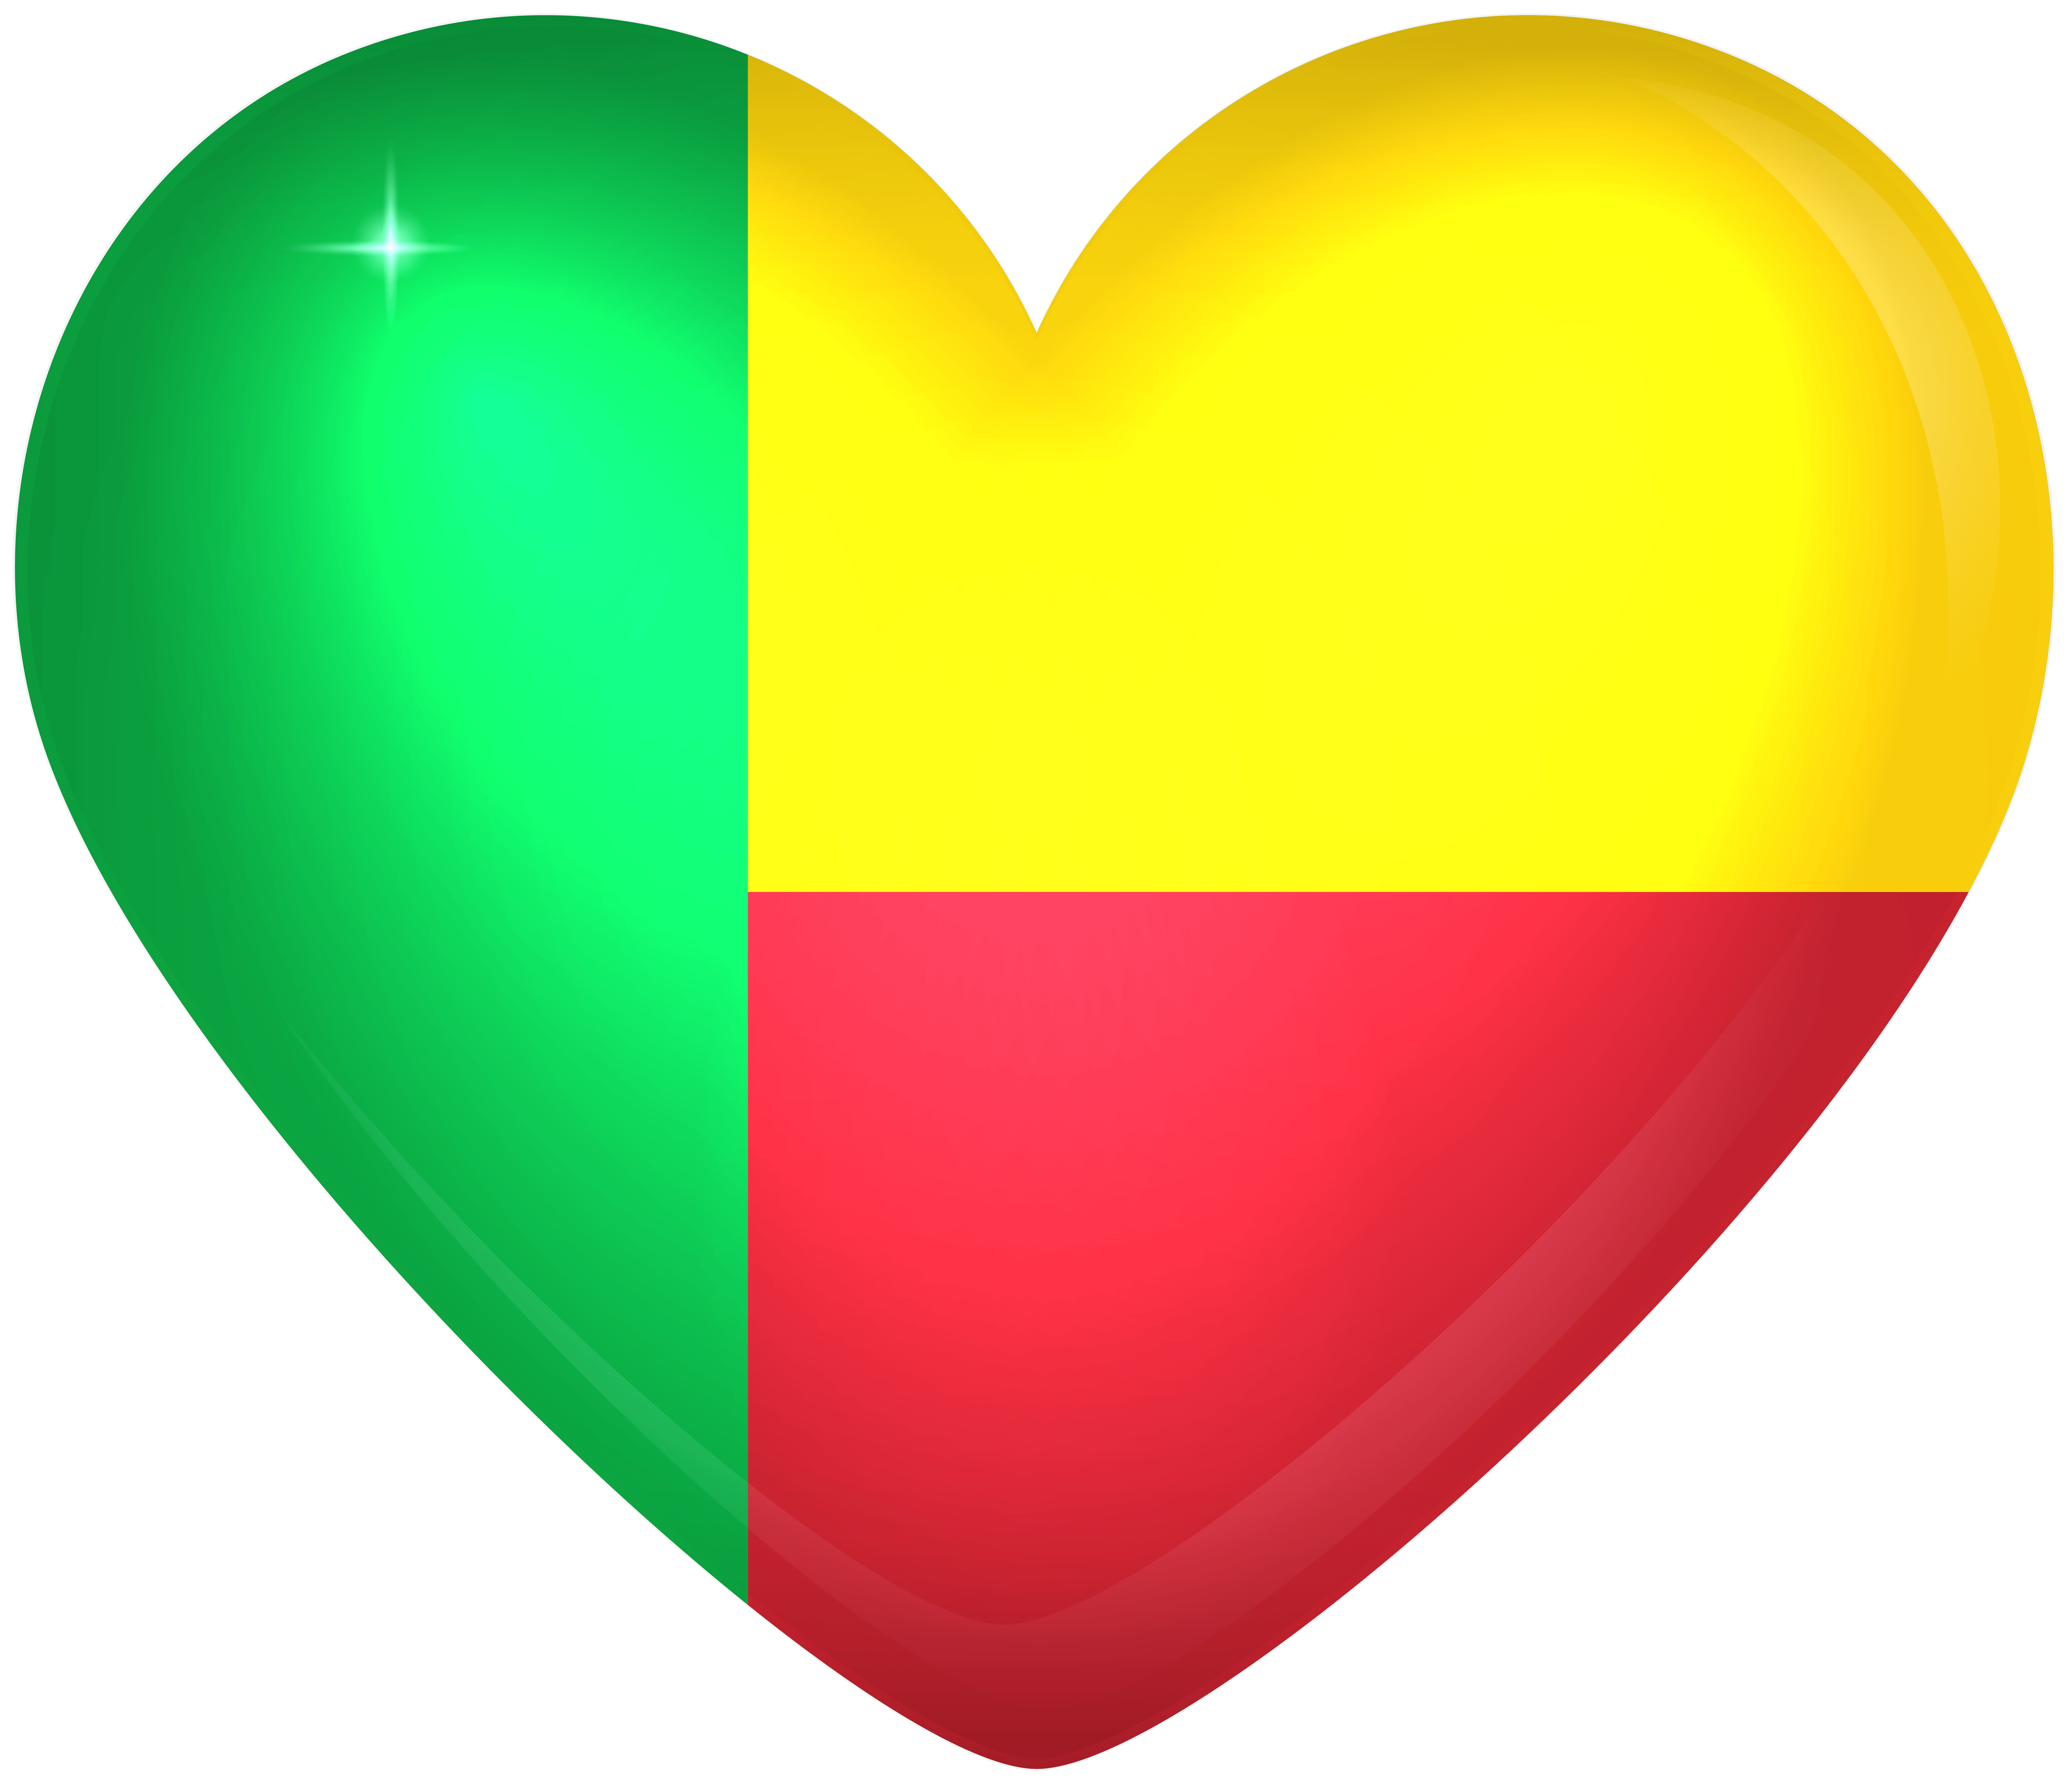 Benin Large Heart Flag Quality Image